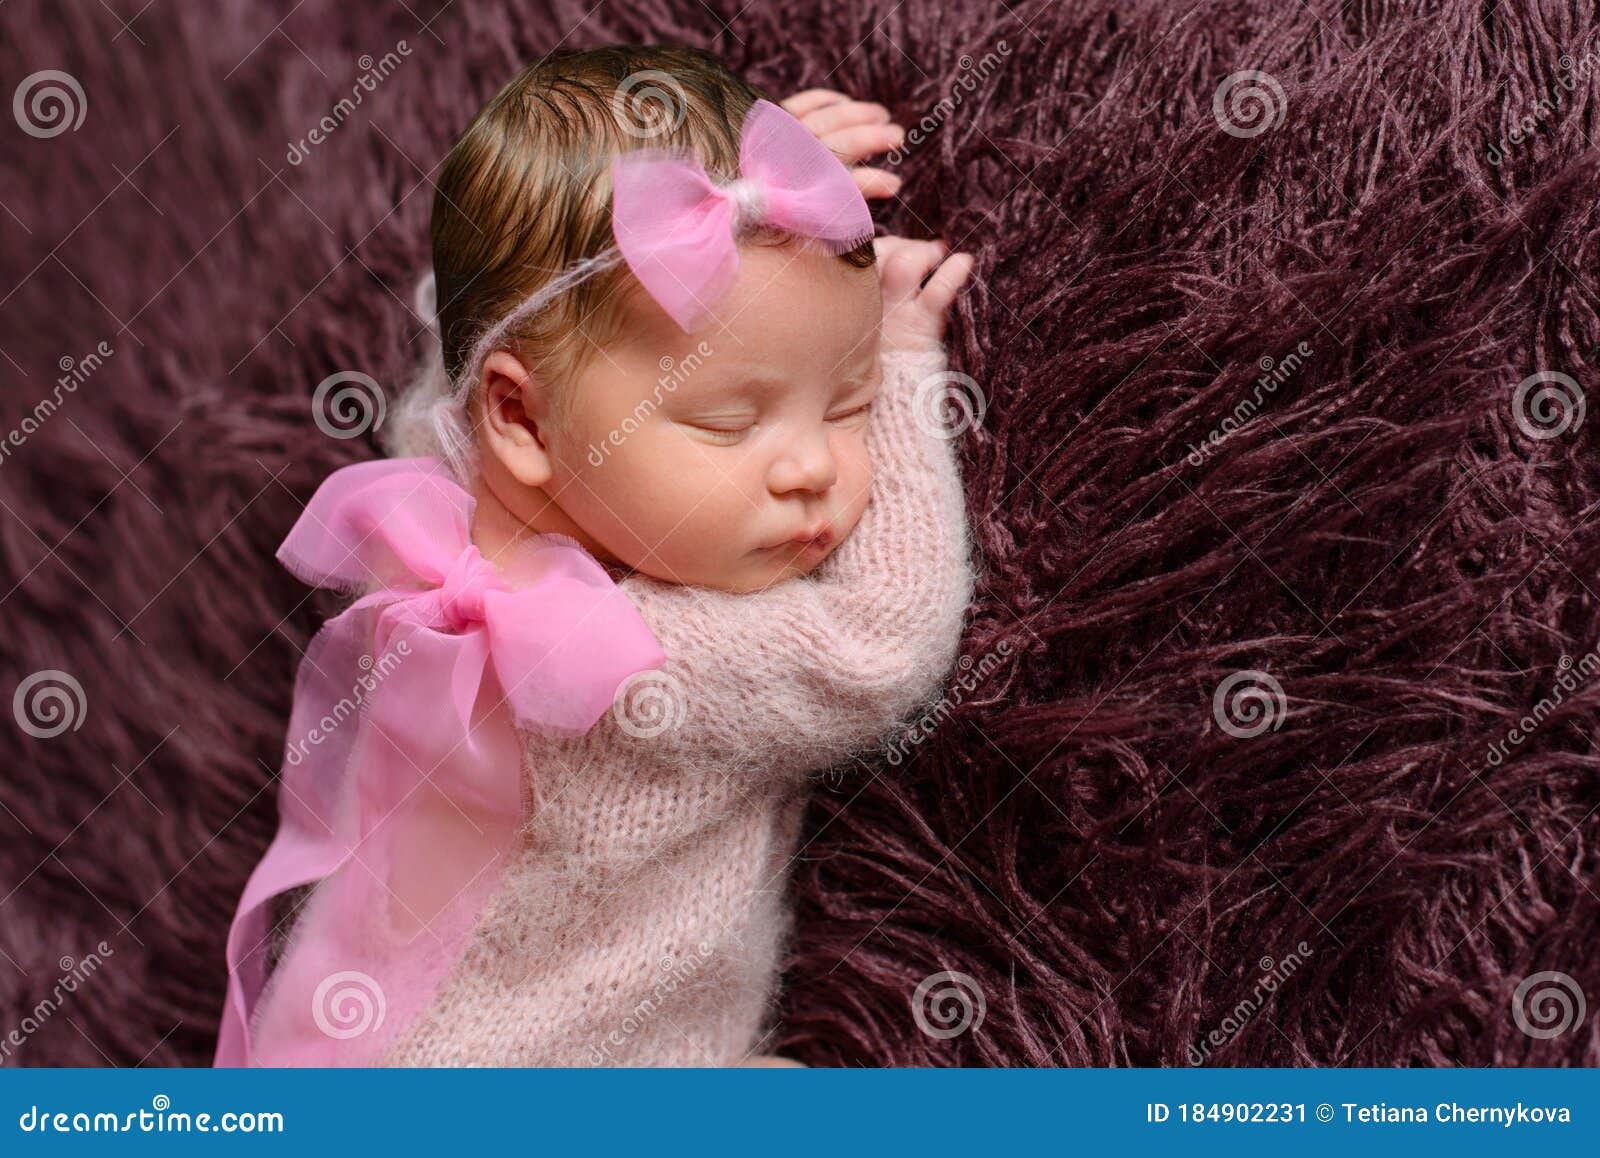 Una Niña Nacida De Ocho Días. Cerrar Con Una Hermosa Bebé Imagen de archivo - Imagen de adorable, lindo: